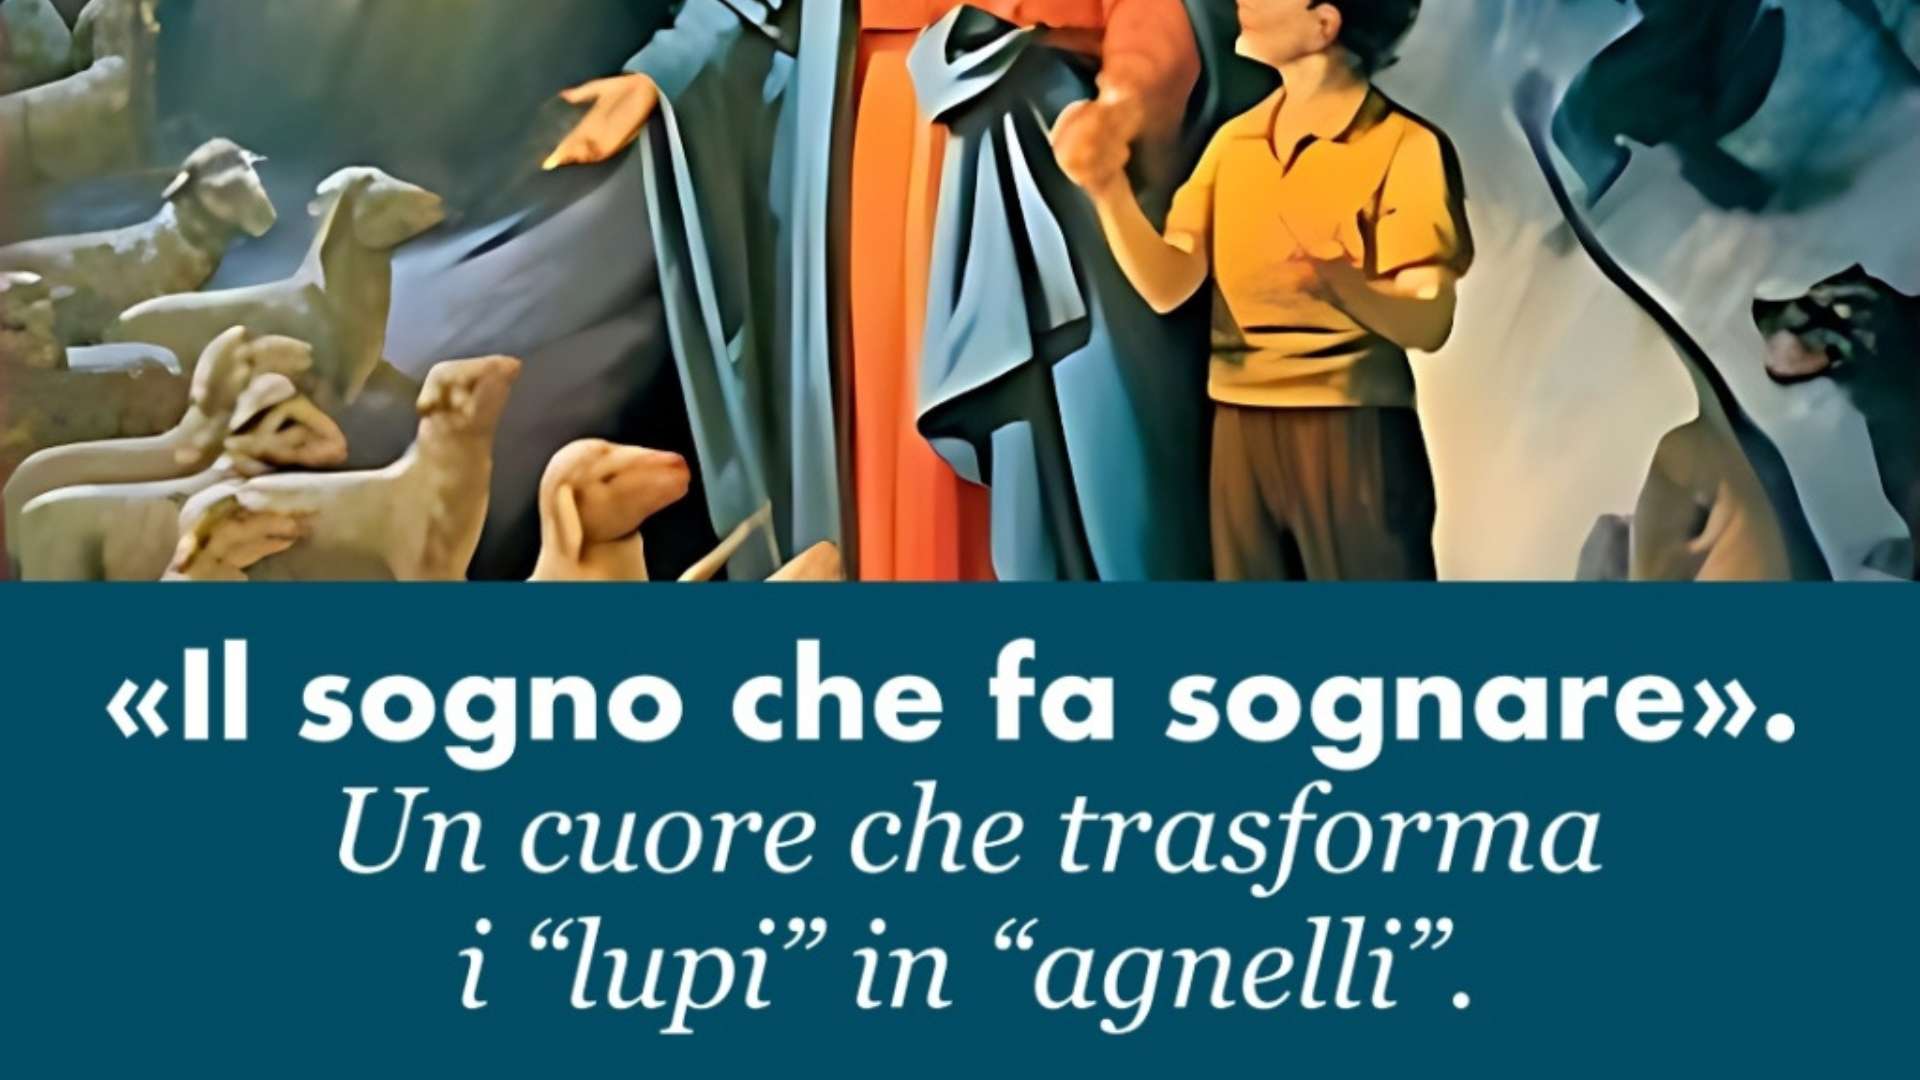 Italia – “Il sogno che fa sognare”: la lettura critico-storica di don  Francesco Motto, Direttore Emerito